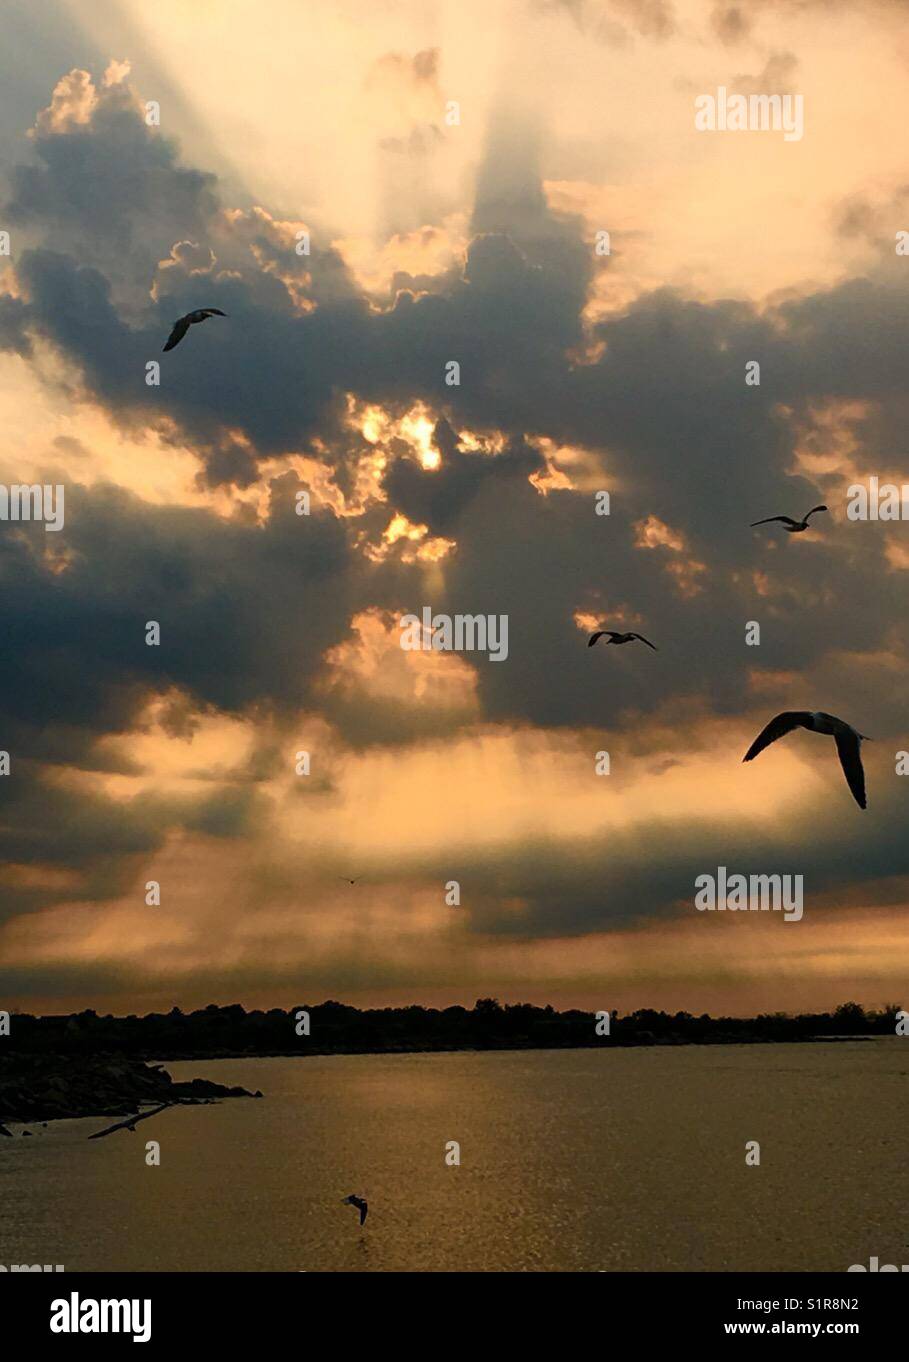 Sonnenuntergang am See. Gefühl, frei wie ein Vogel und das Leben zu leben wie ich kein Morgen. glücklich sein und das Armaturenbrett leben. Stockfoto